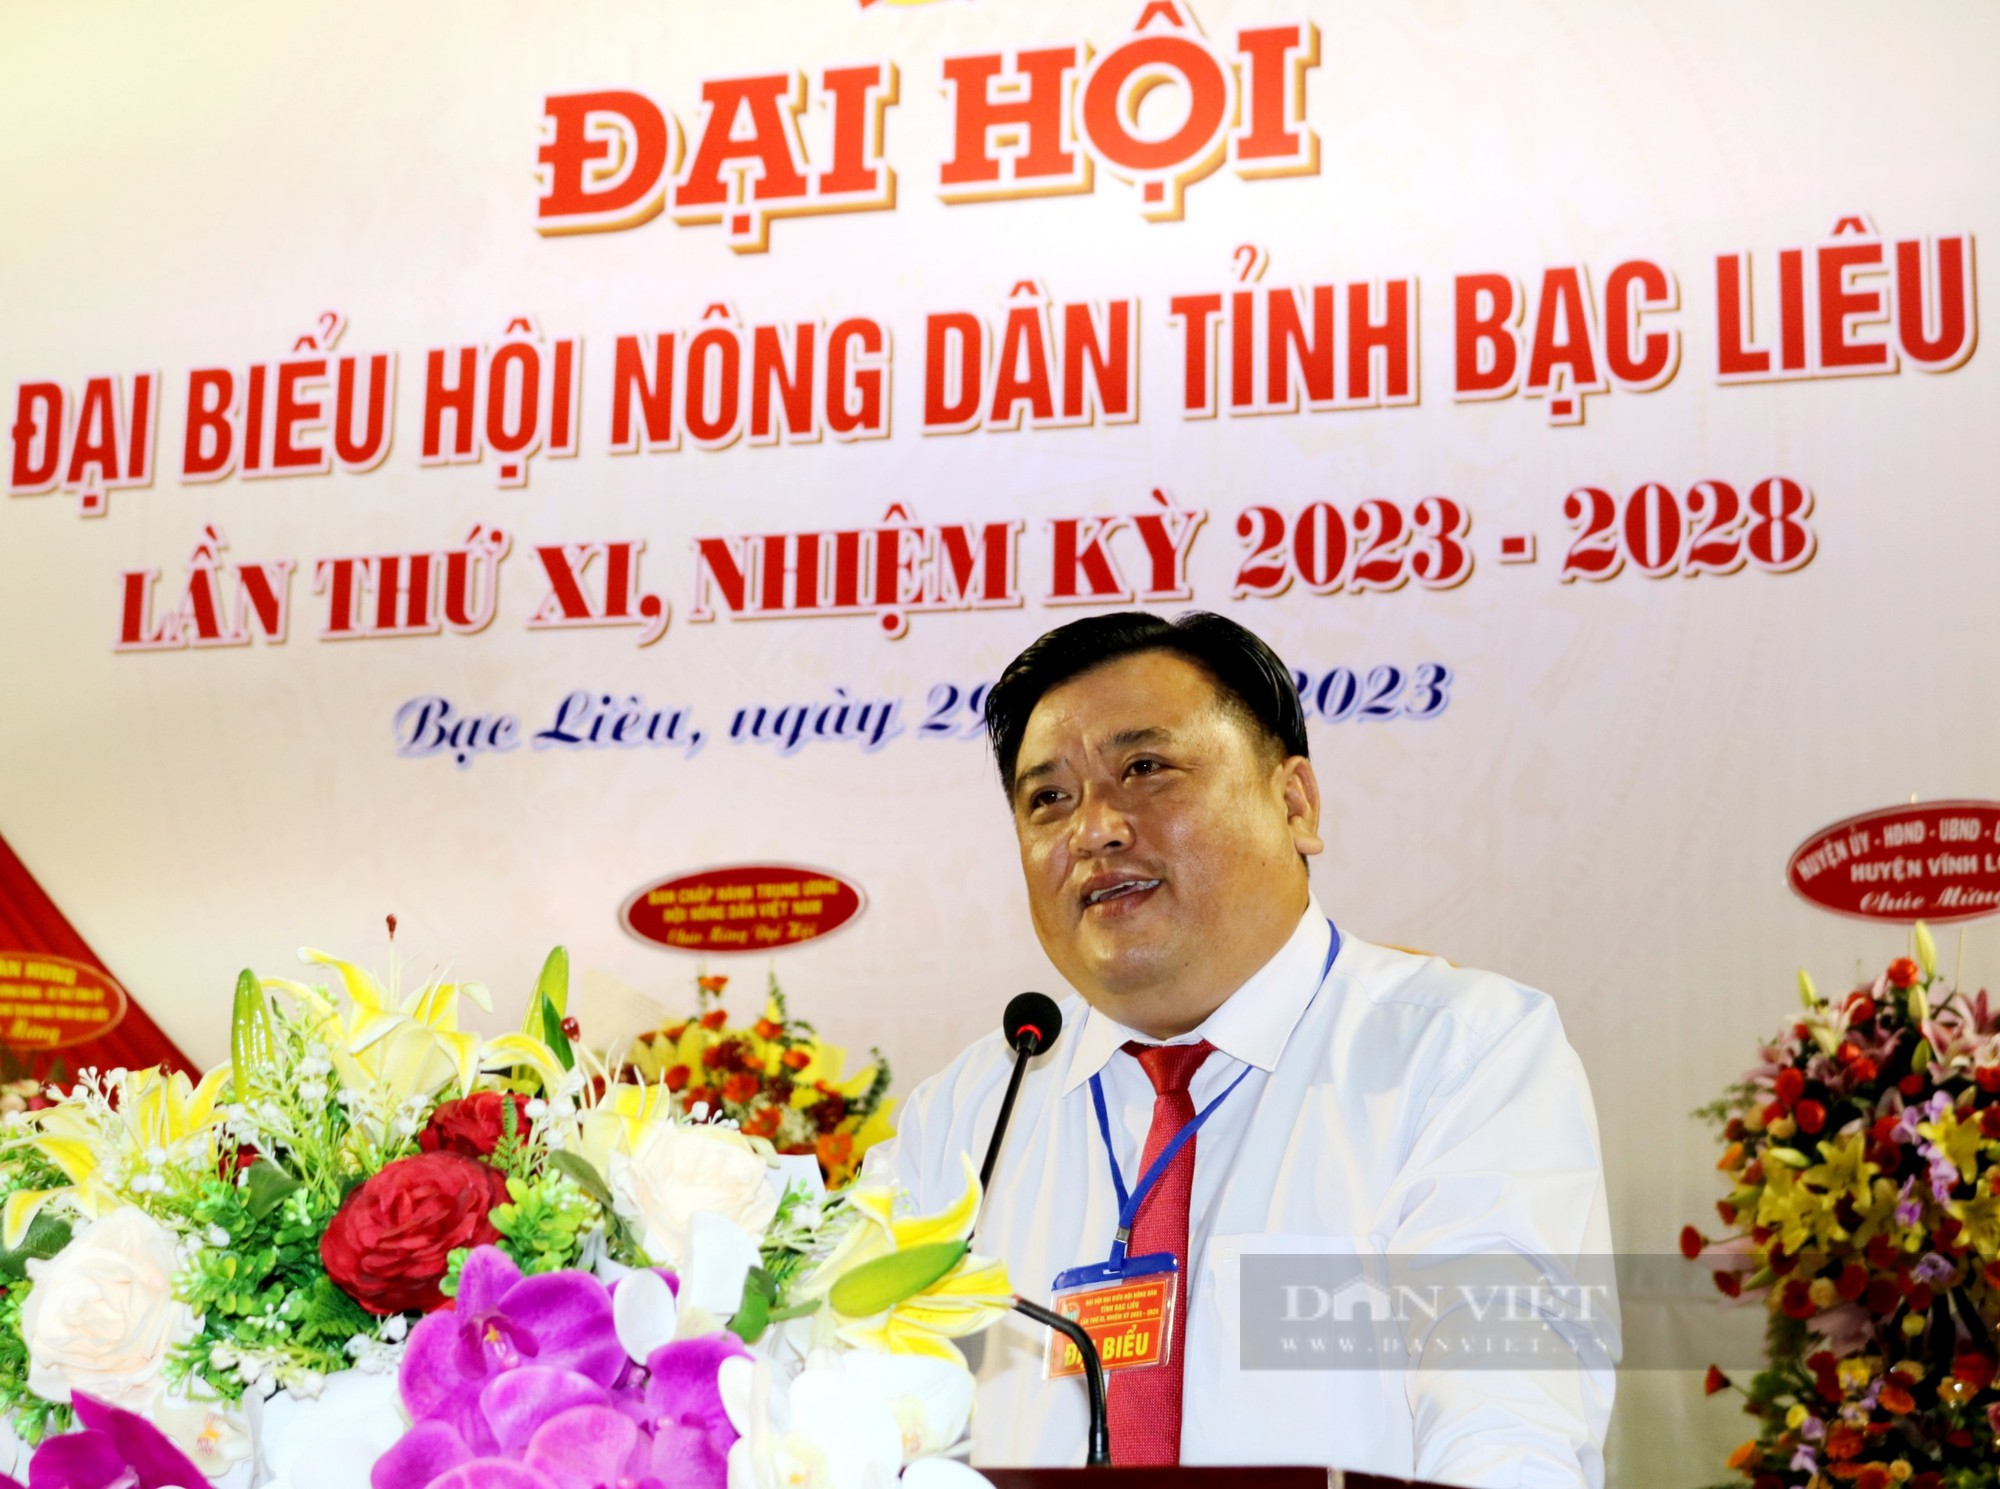 Phiên trù bị Đại hội đại biểu Hội Nông dân tỉnh Bạc Liêu: Đóng góp sôi nổi các chỉ tiêu nhiệm kỳ 2023 - 2028 - Ảnh 4.